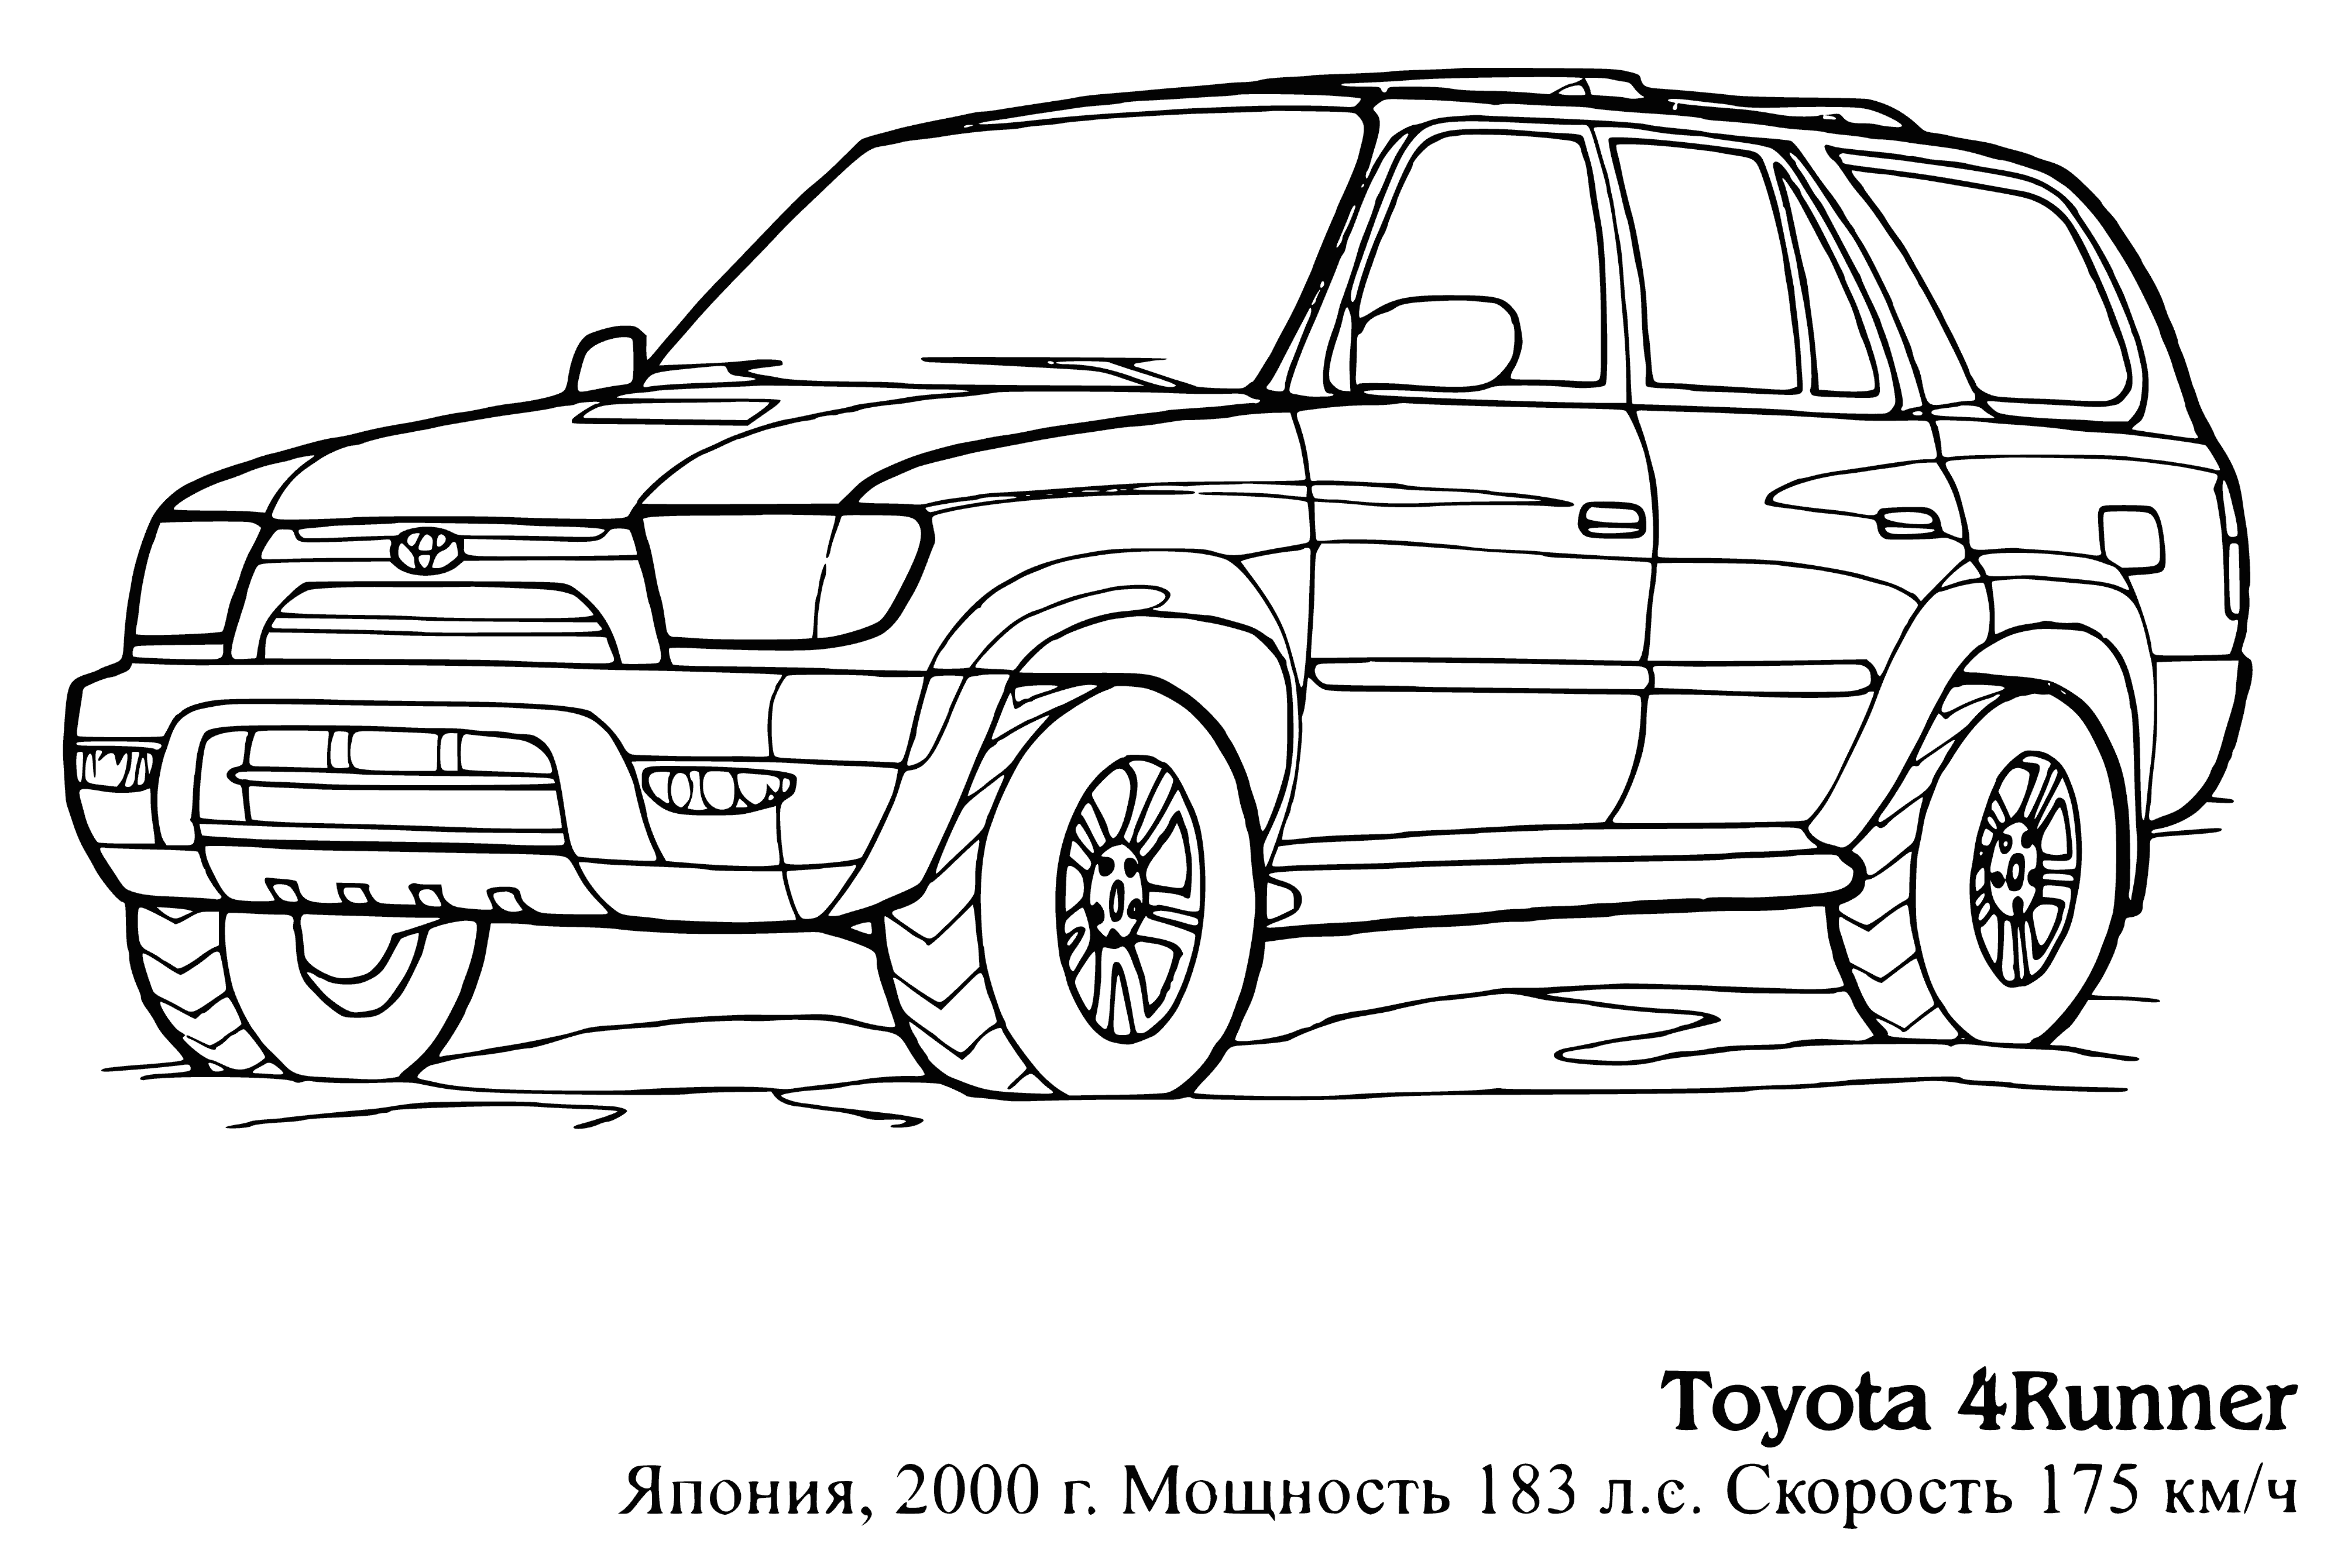 Toyota 4Runner boyama sayfası